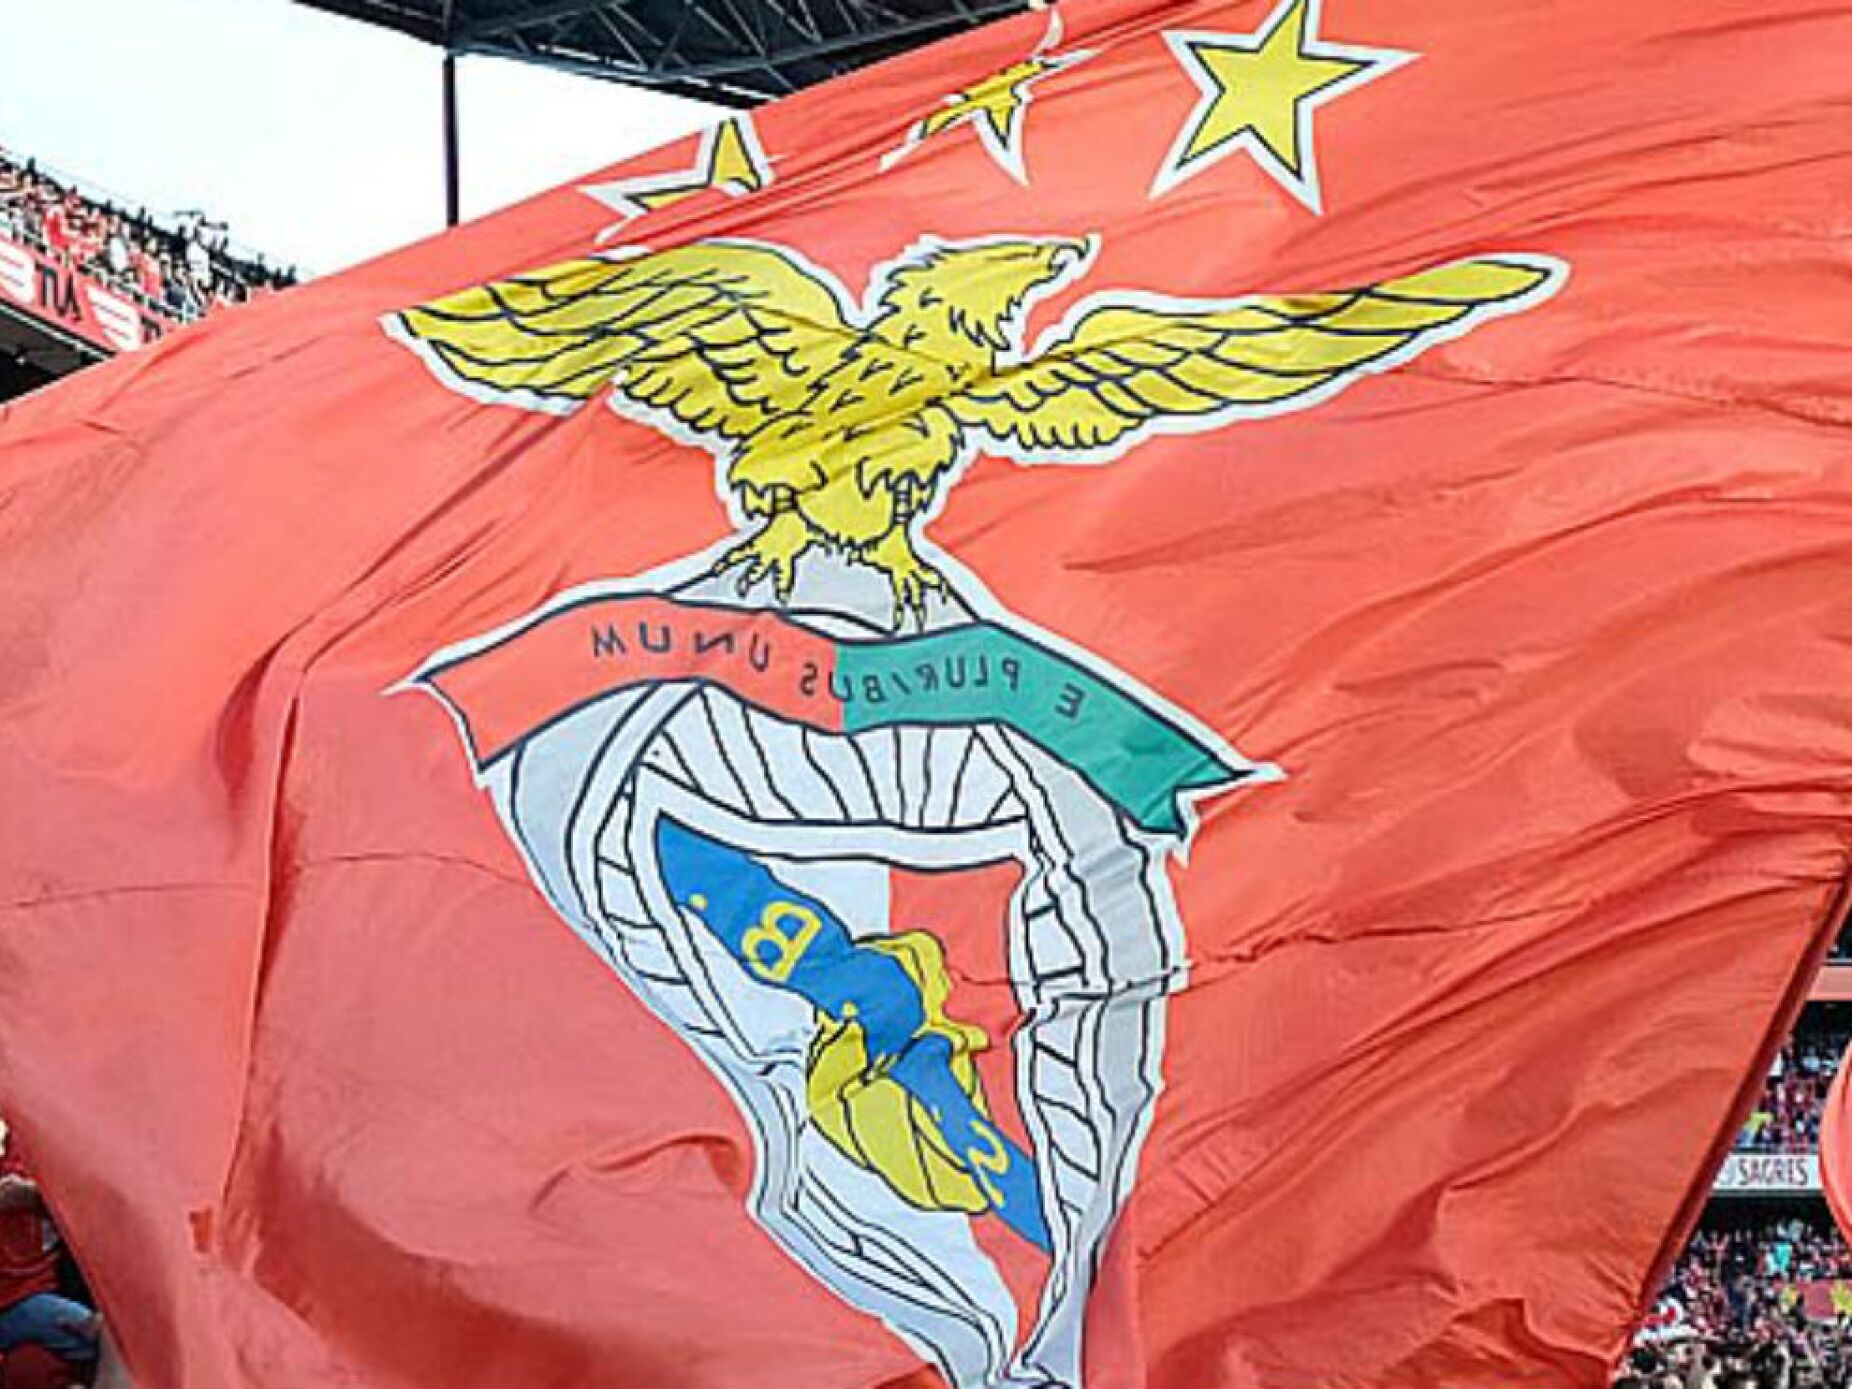 Orçamento do Benfica passou à justa. Rui Costa questionado e apupado